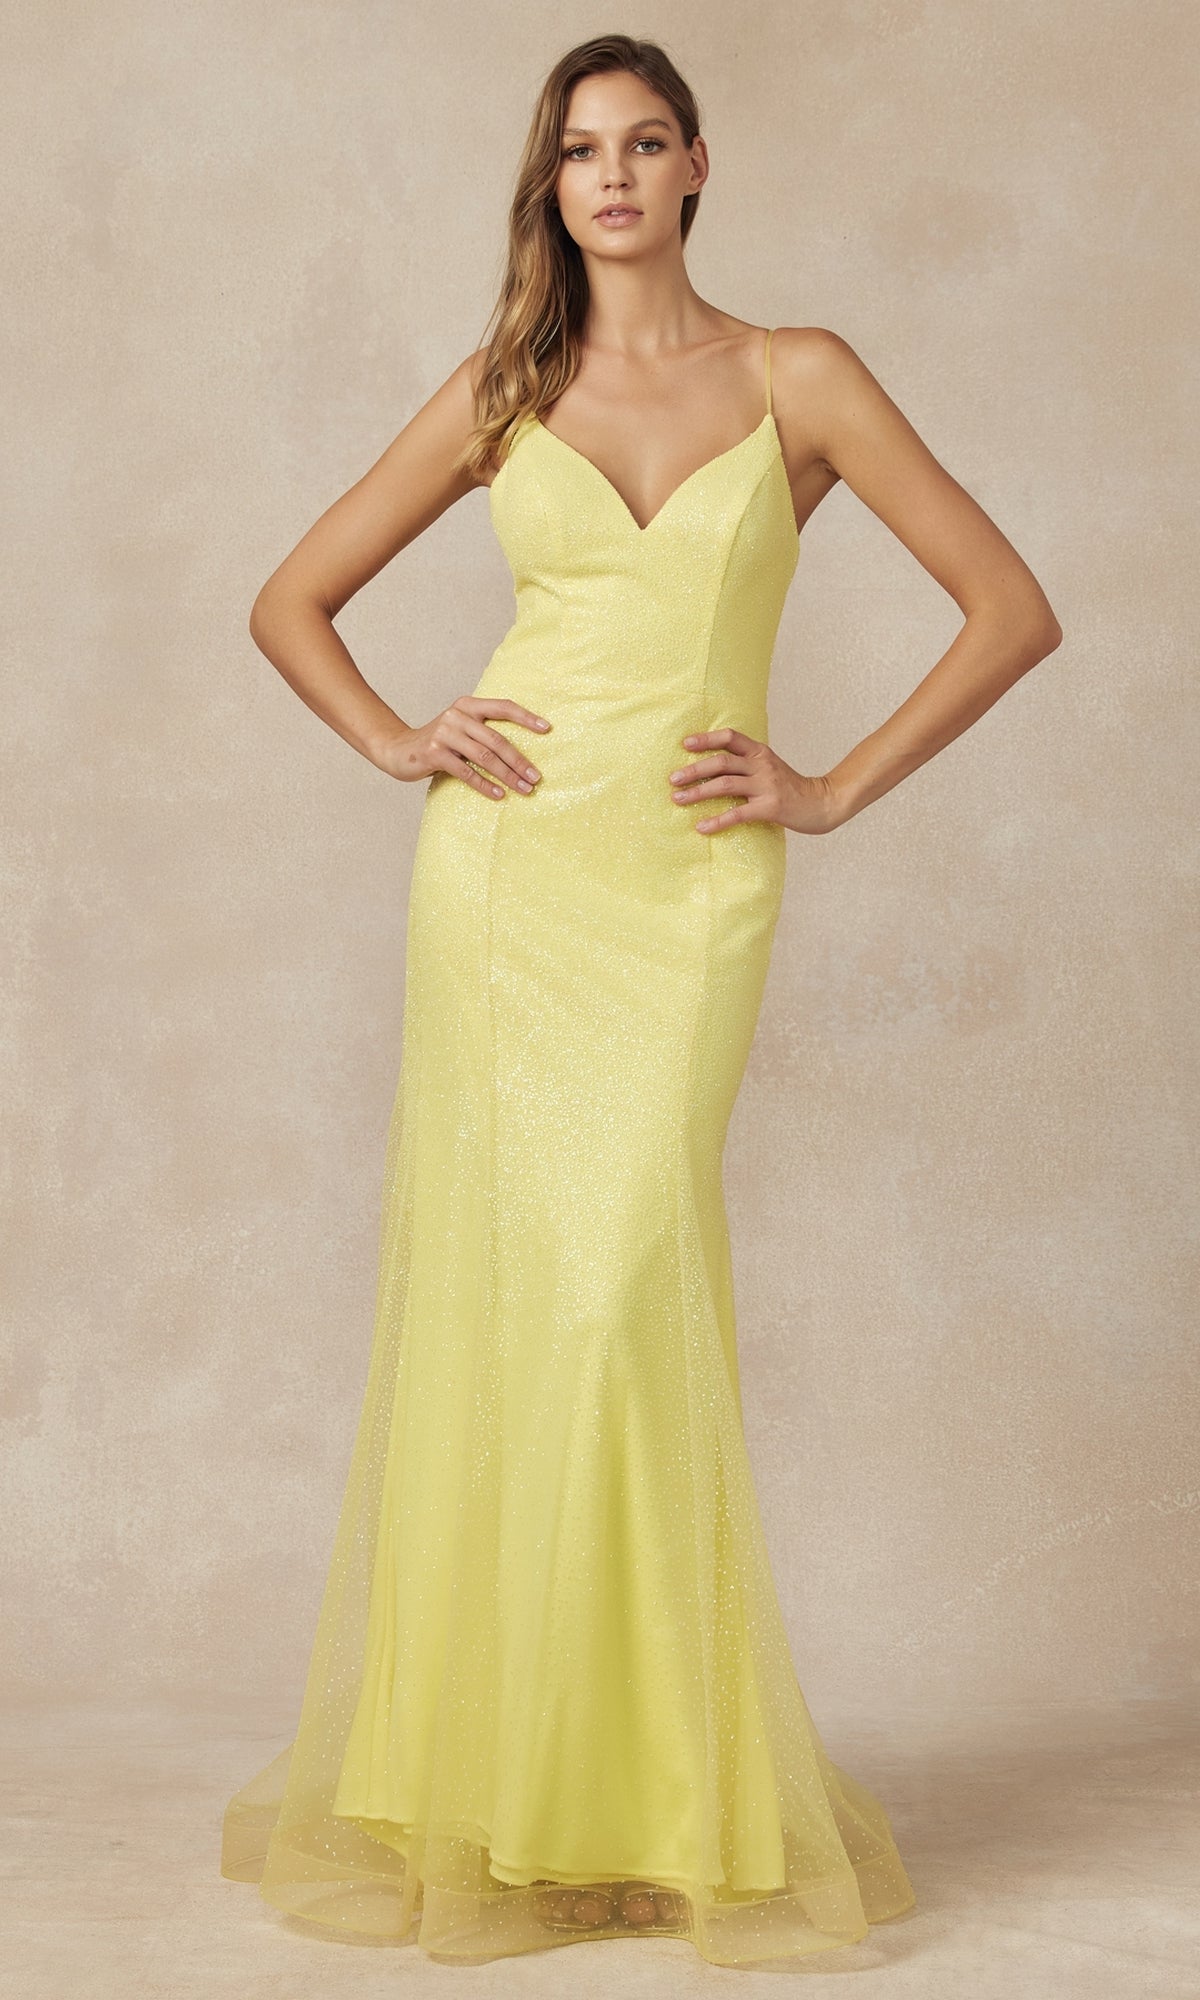 Princess-Cut Long Glitter Mermaid Prom Dress 271